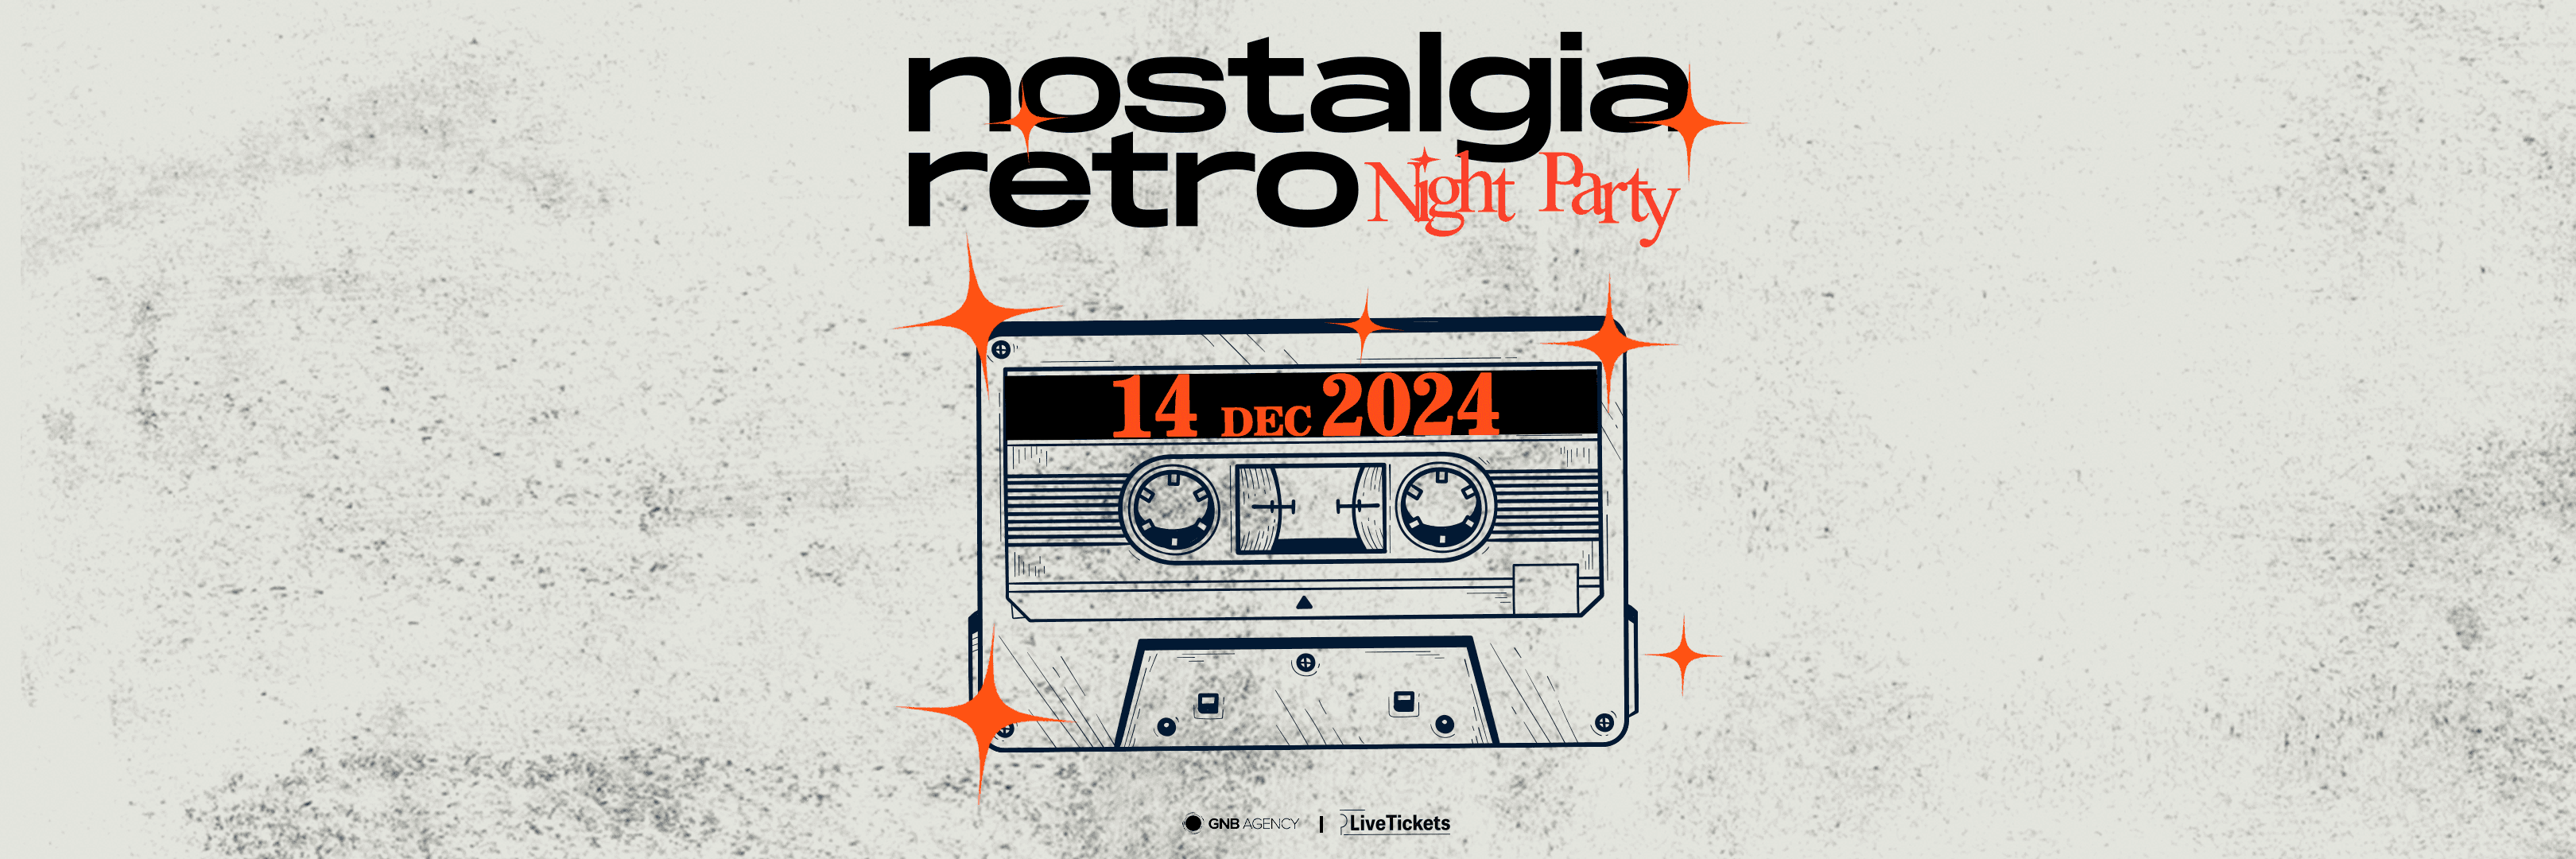 Nostalgia Retro Night Party 2024